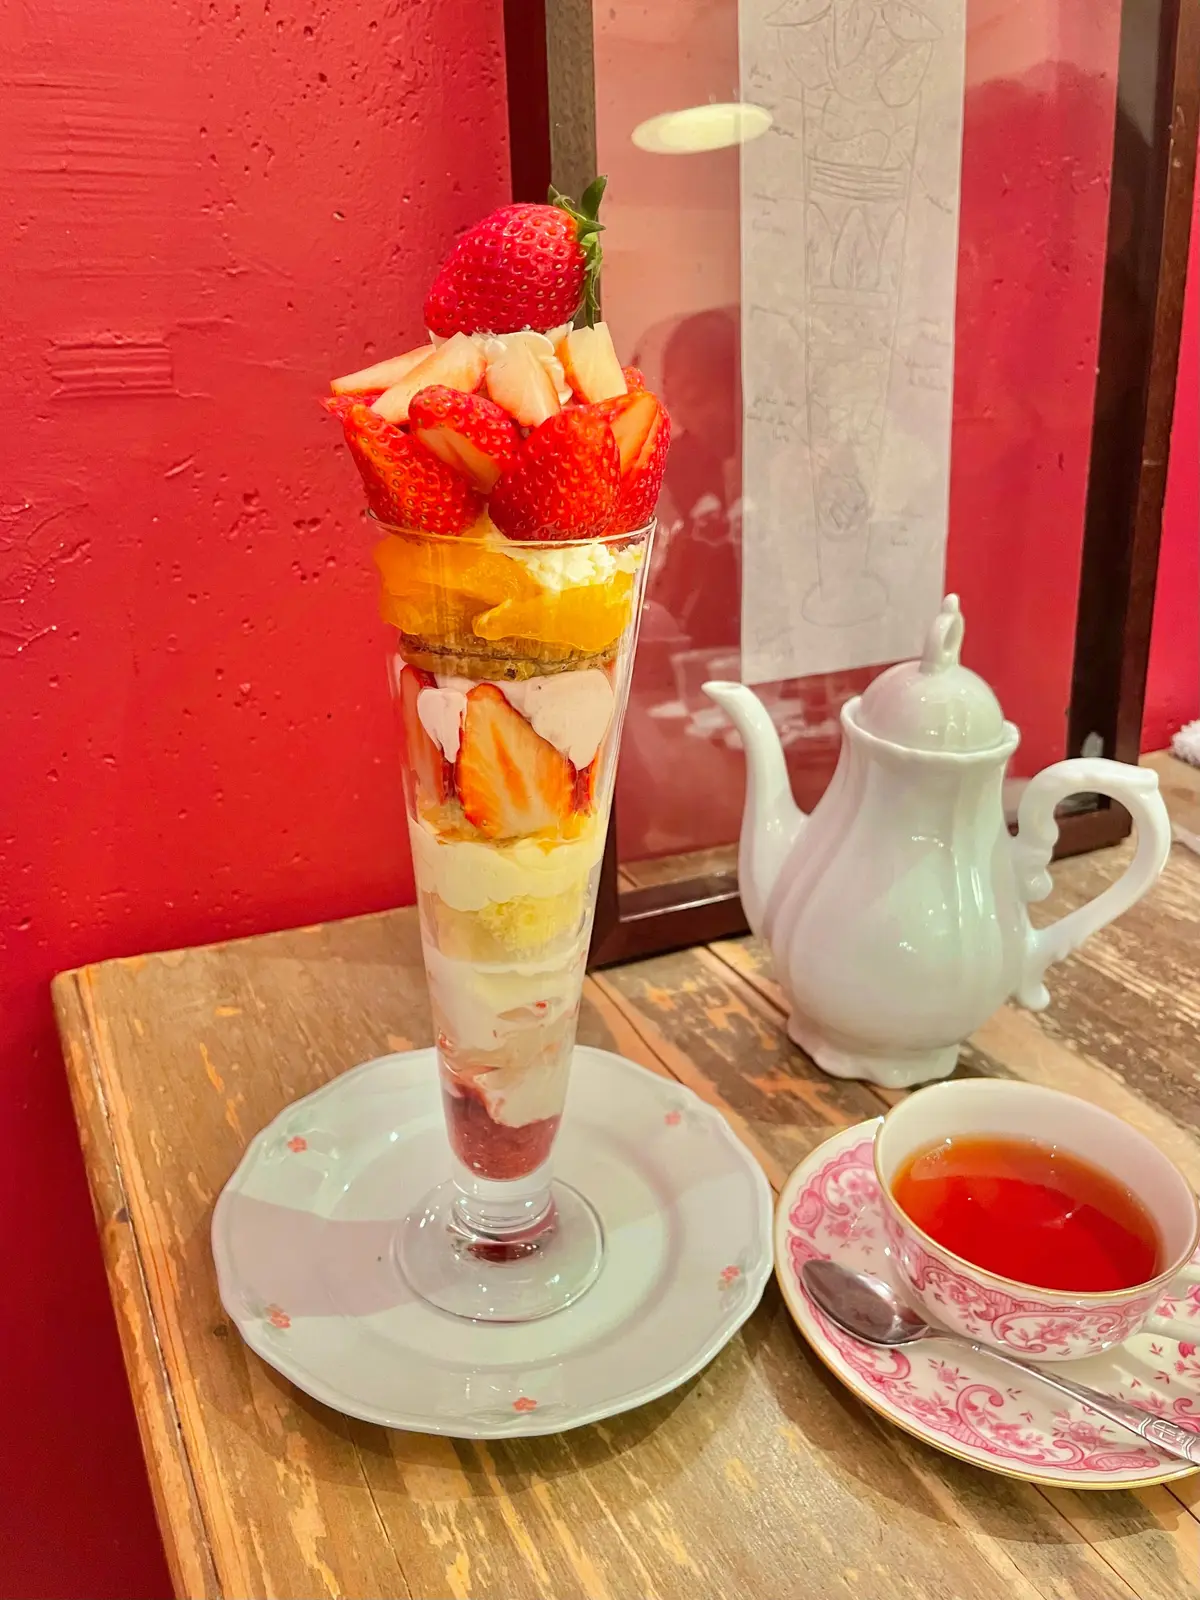 ケーキとイートイン限定季節のフルーツを使ったパフェが大人気な東京 八王子のカフェ「Akameru(アカメル)」の「苺と愛媛マドンナのパフェ」